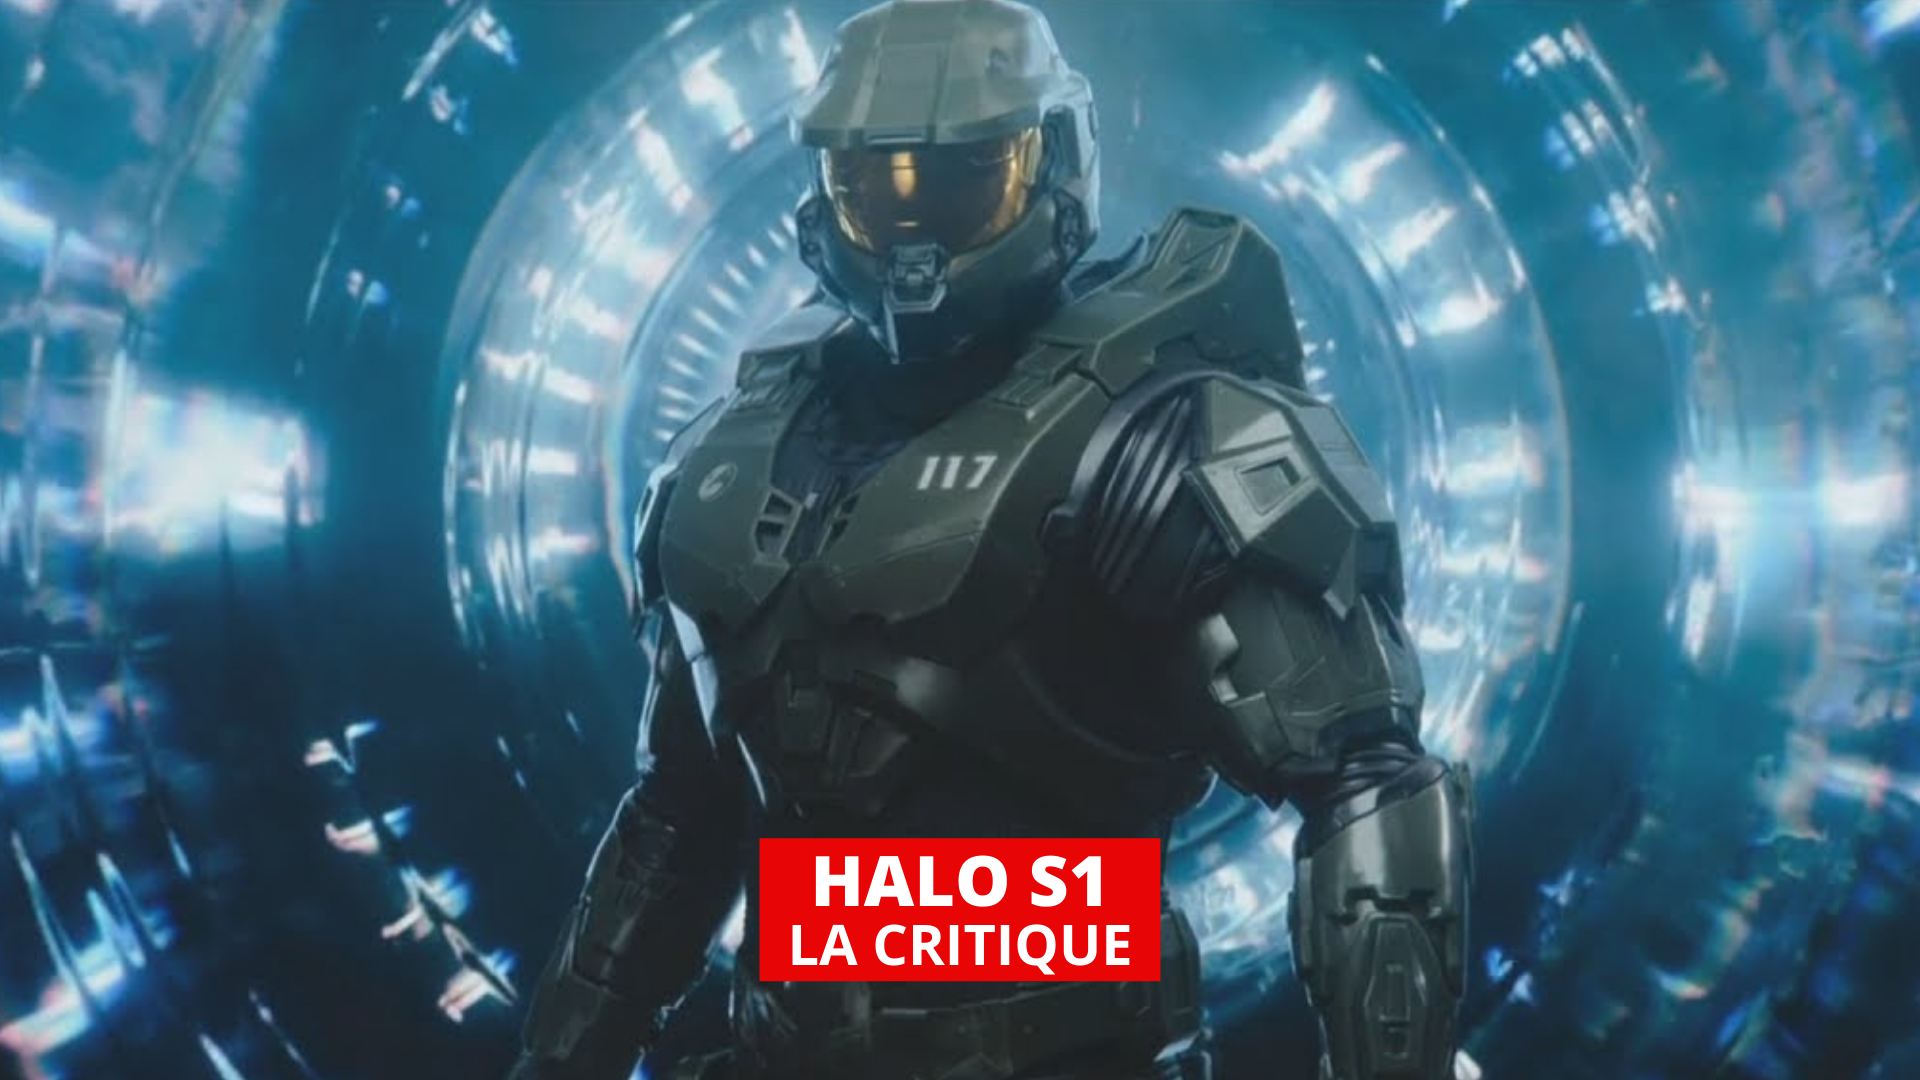 Série de 'Halo' dá poucos motivos para ser acompanhada - 16/04/2022 -  Ilustrada - Folha